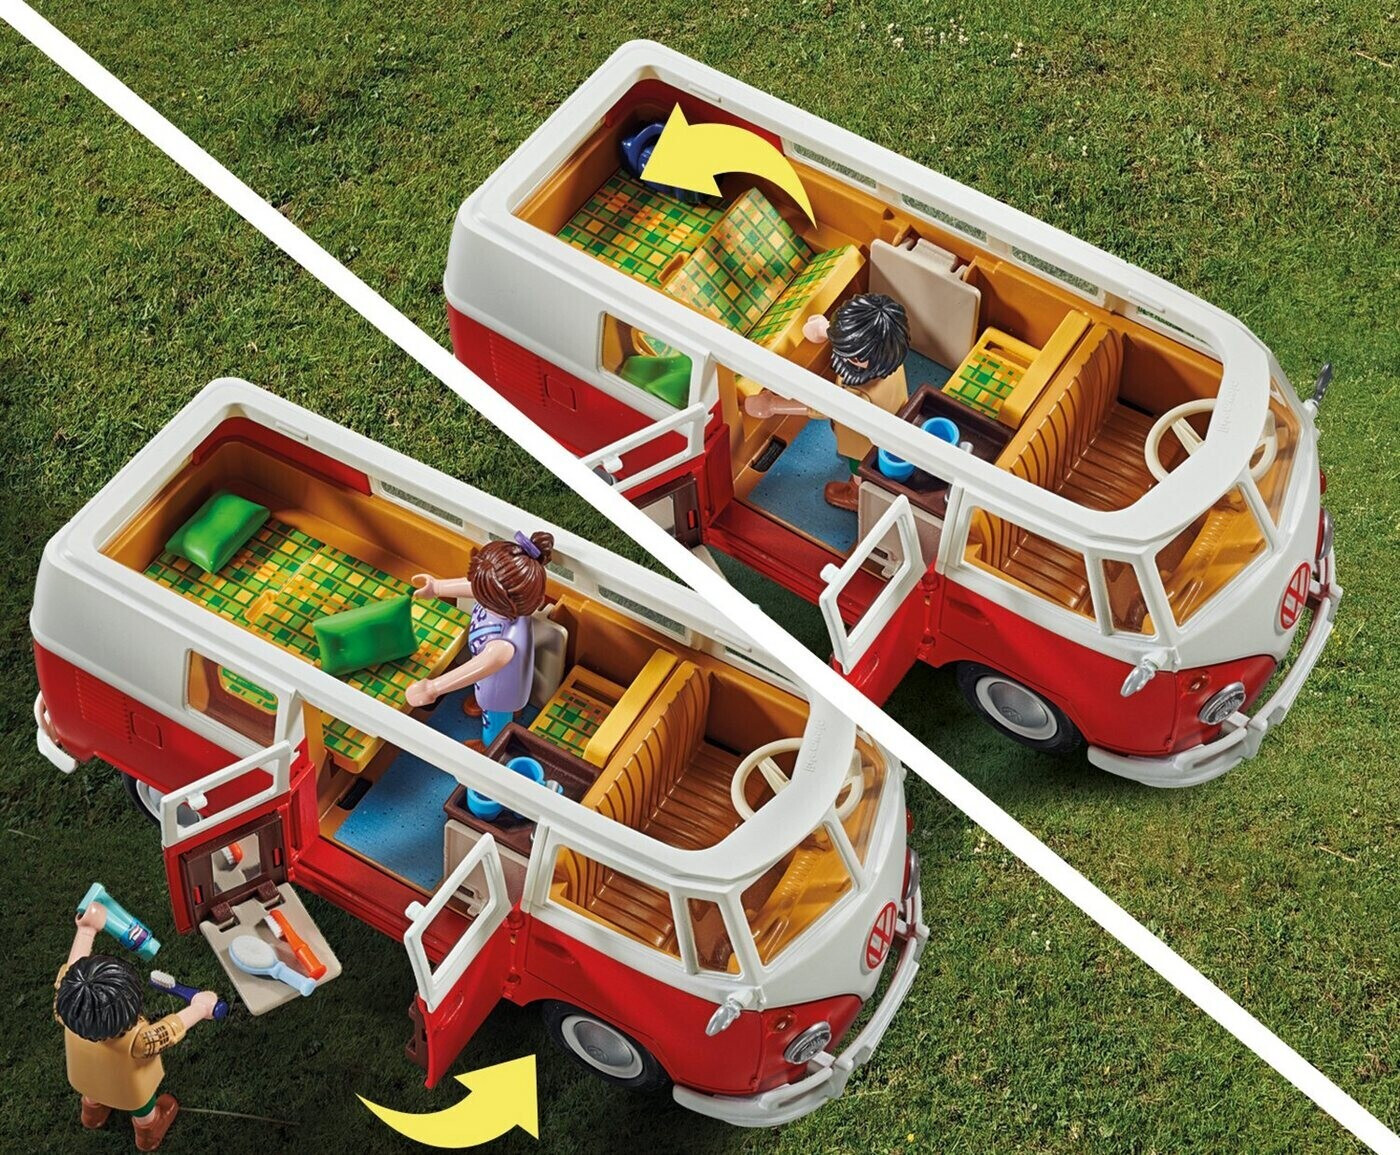 Playmobil Specialutgåva Volkswagen T1 Camping Bus Flerfärgad